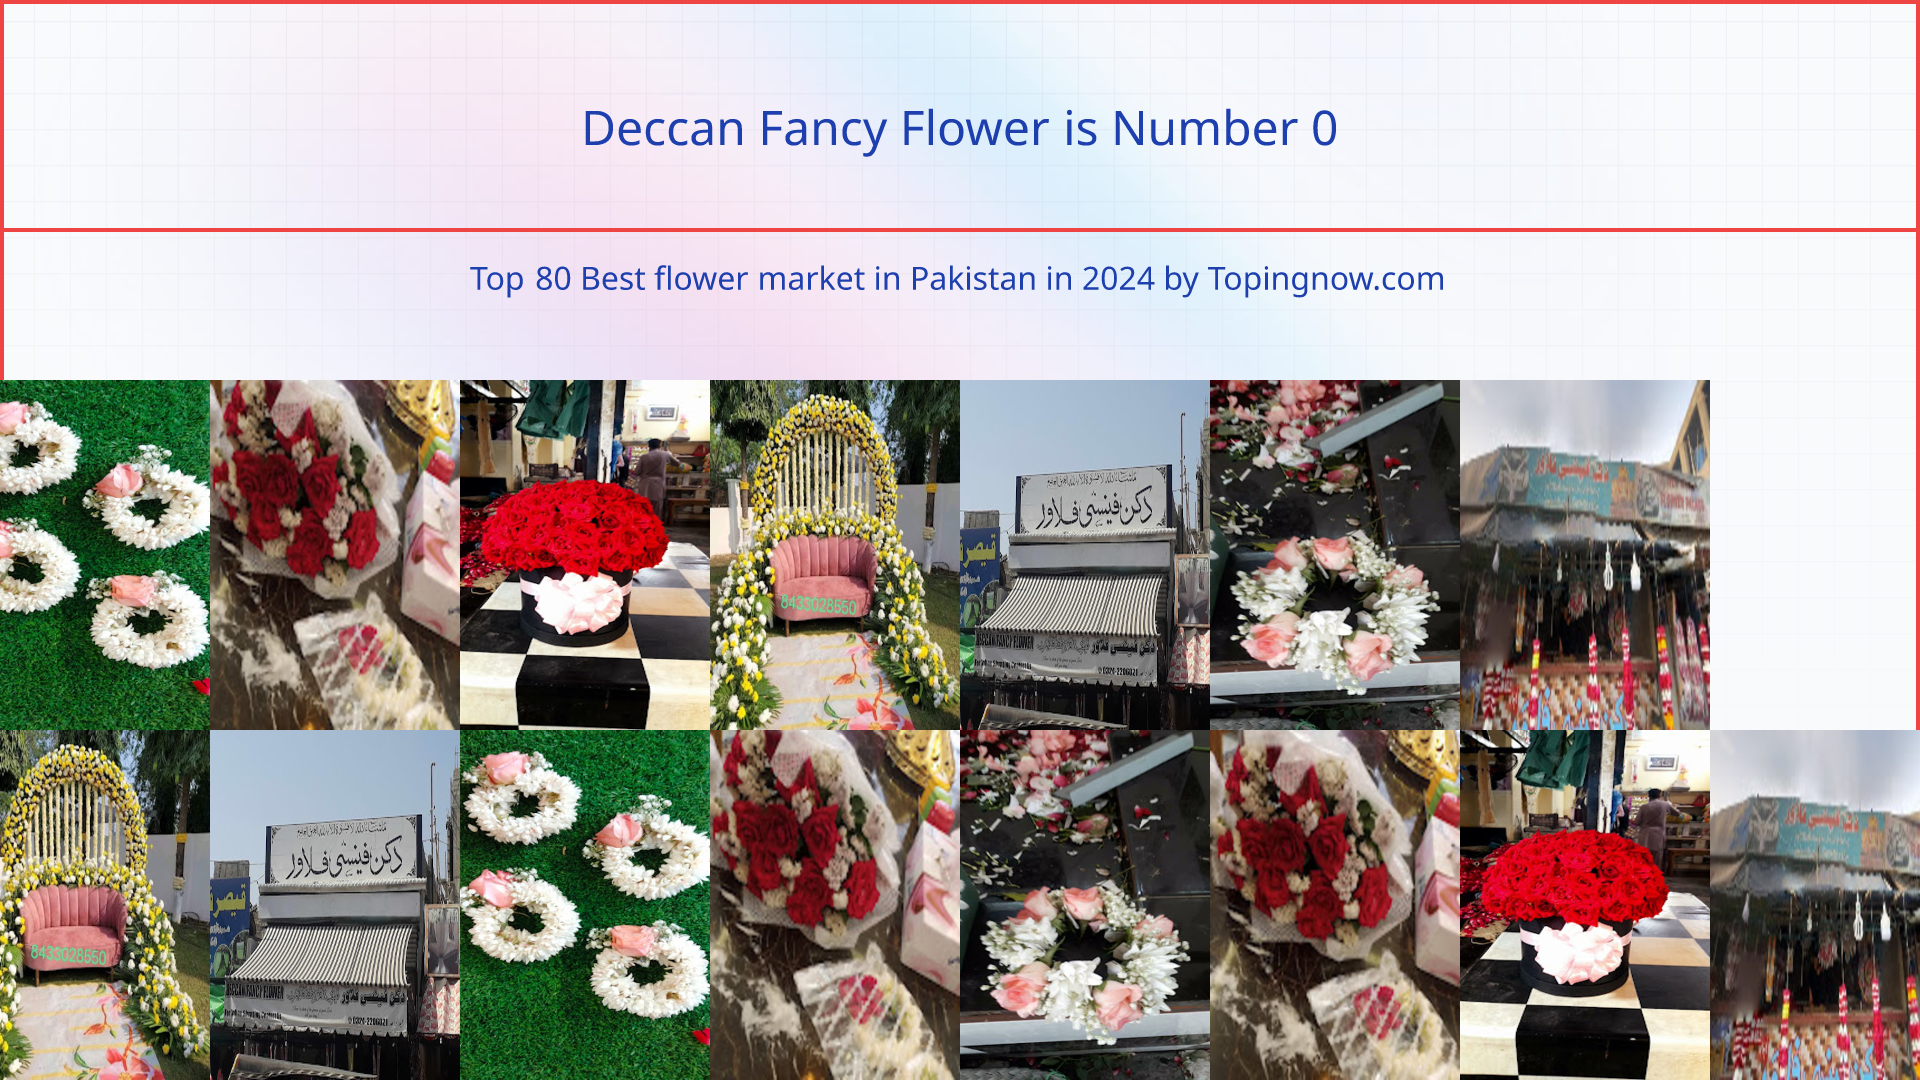 Deccan Fancy Flower: Top 80 Best flower market in Pakistan in 2024